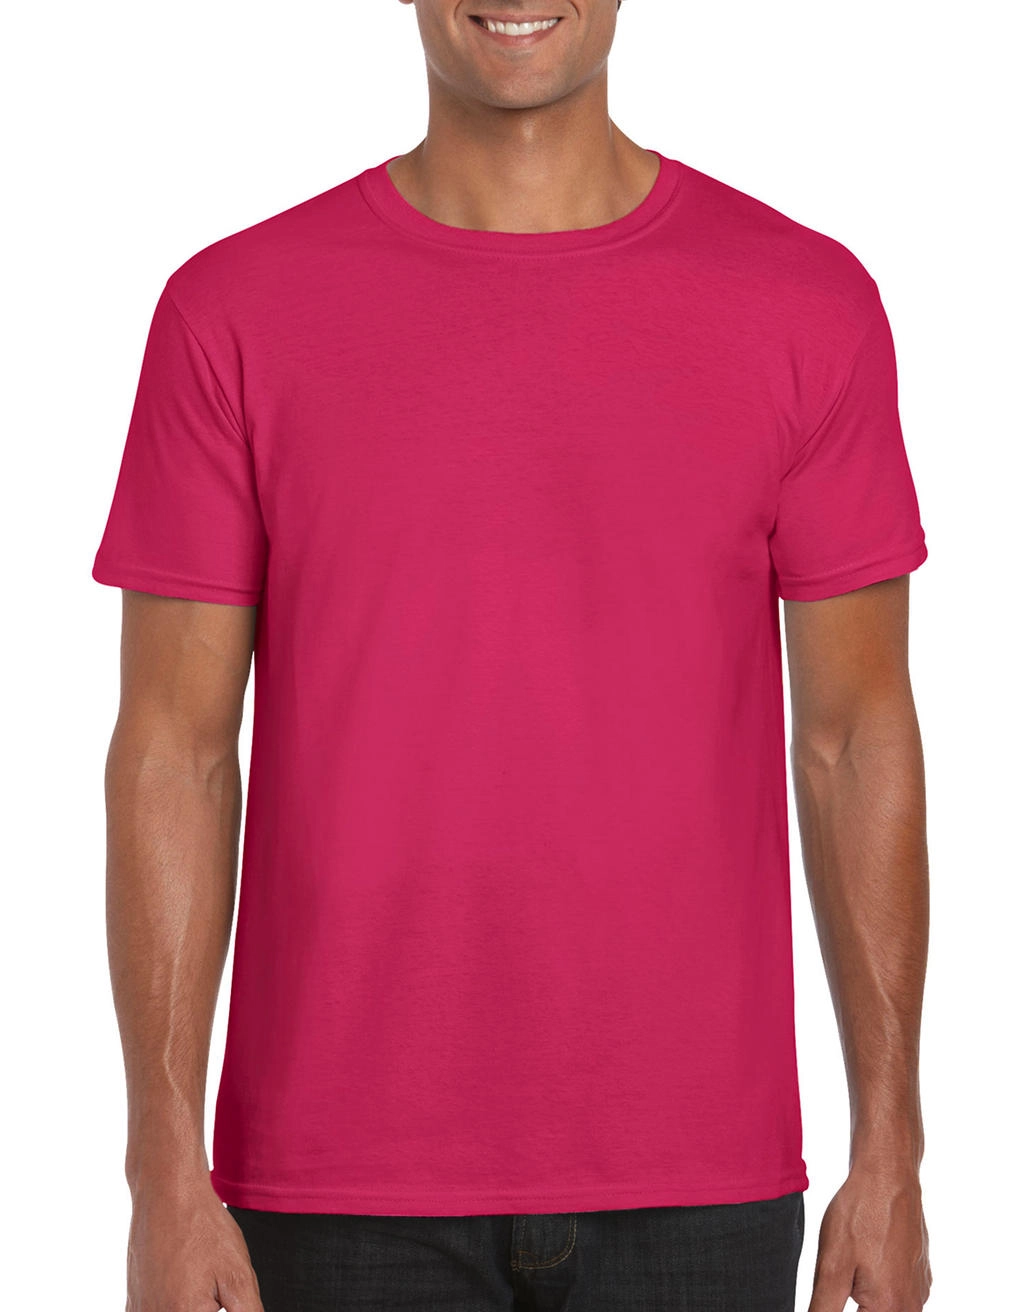 Softstyle® Ring Spun T-Shirt zum Besticken und Bedrucken in der Farbe Heliconia mit Ihren Logo, Schriftzug oder Motiv.